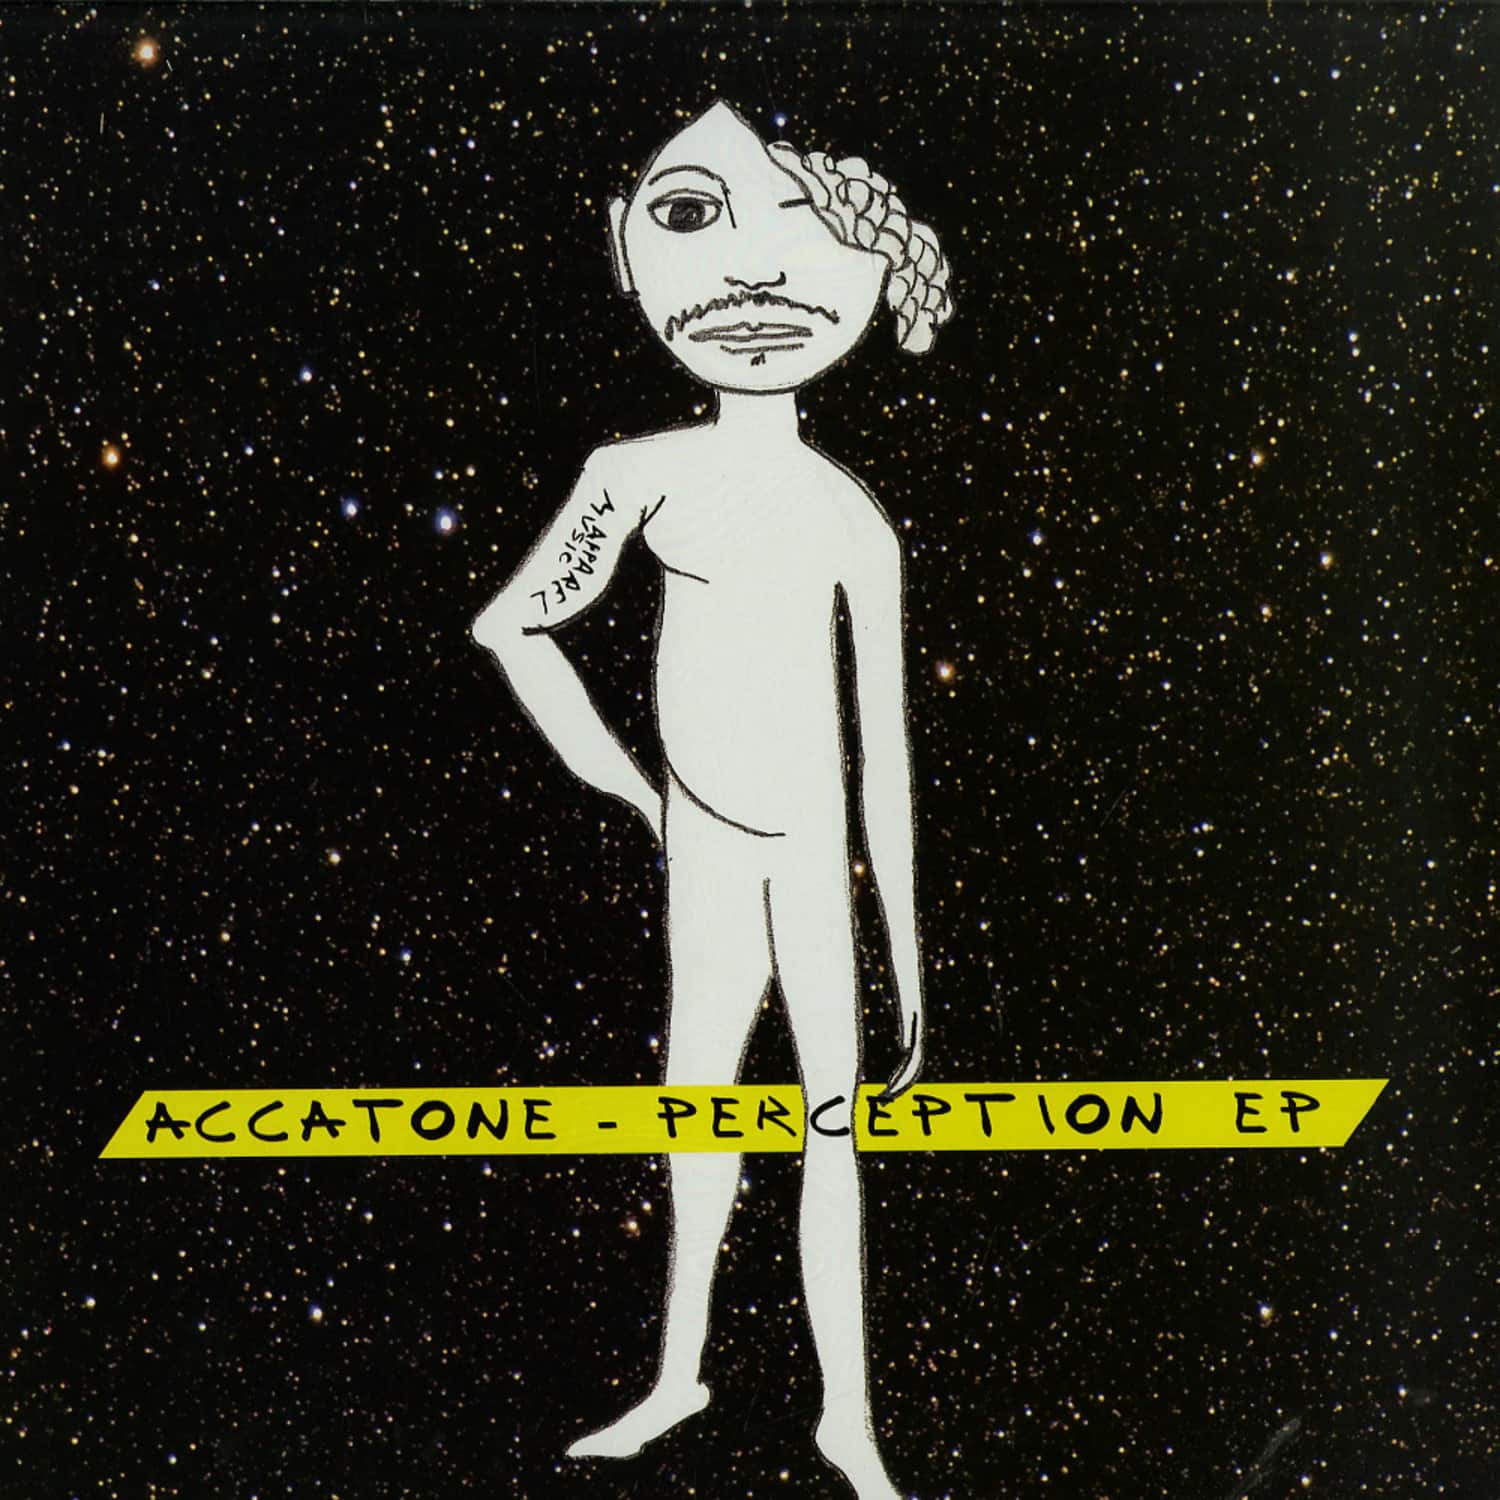 Accatone - PERCEPTION EP